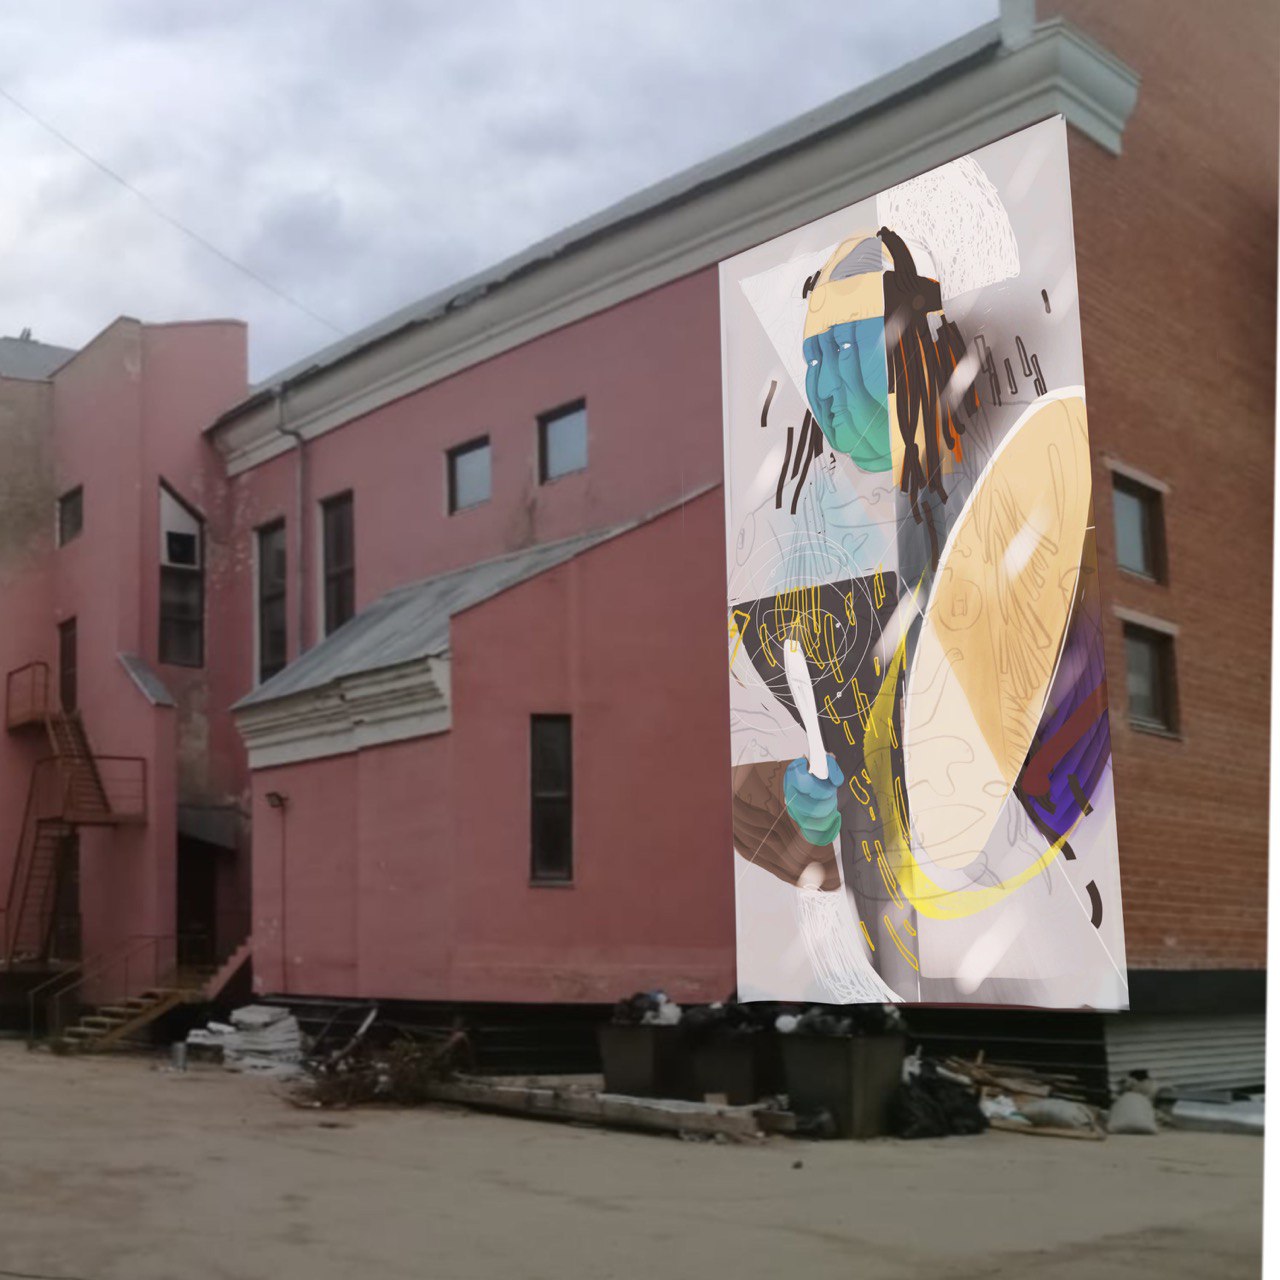 Замминистра культуры Якутии опубликовал еще один макет Адно, предложенный для бывшей церкви в Якутске